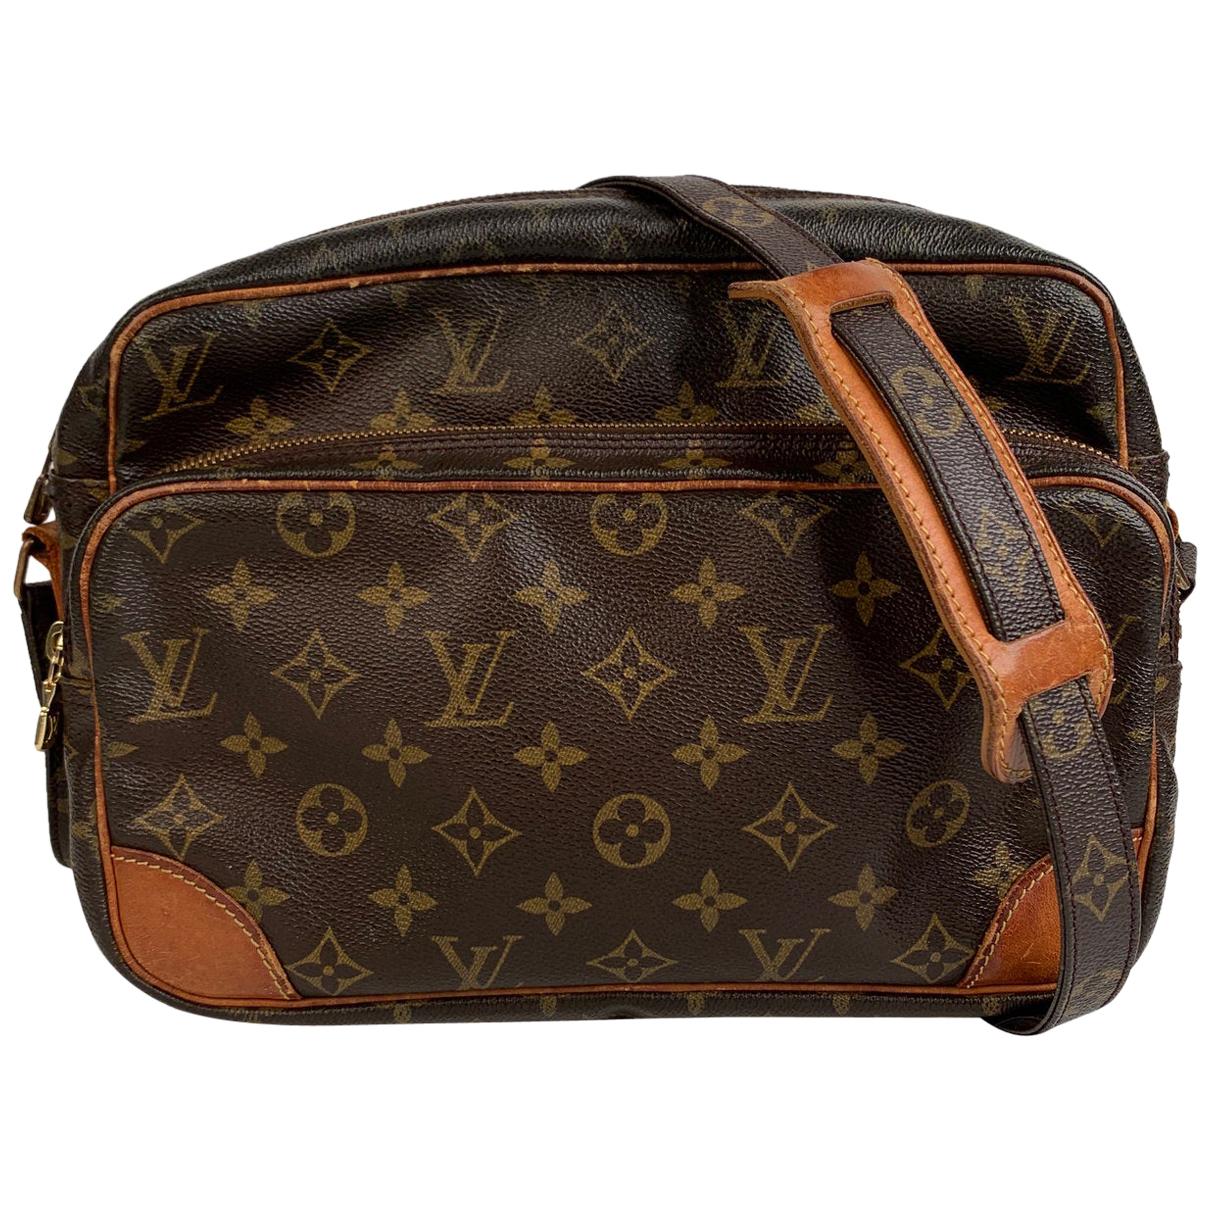 Sold at Auction: Louis Vuitton Canvas Messenger Bag